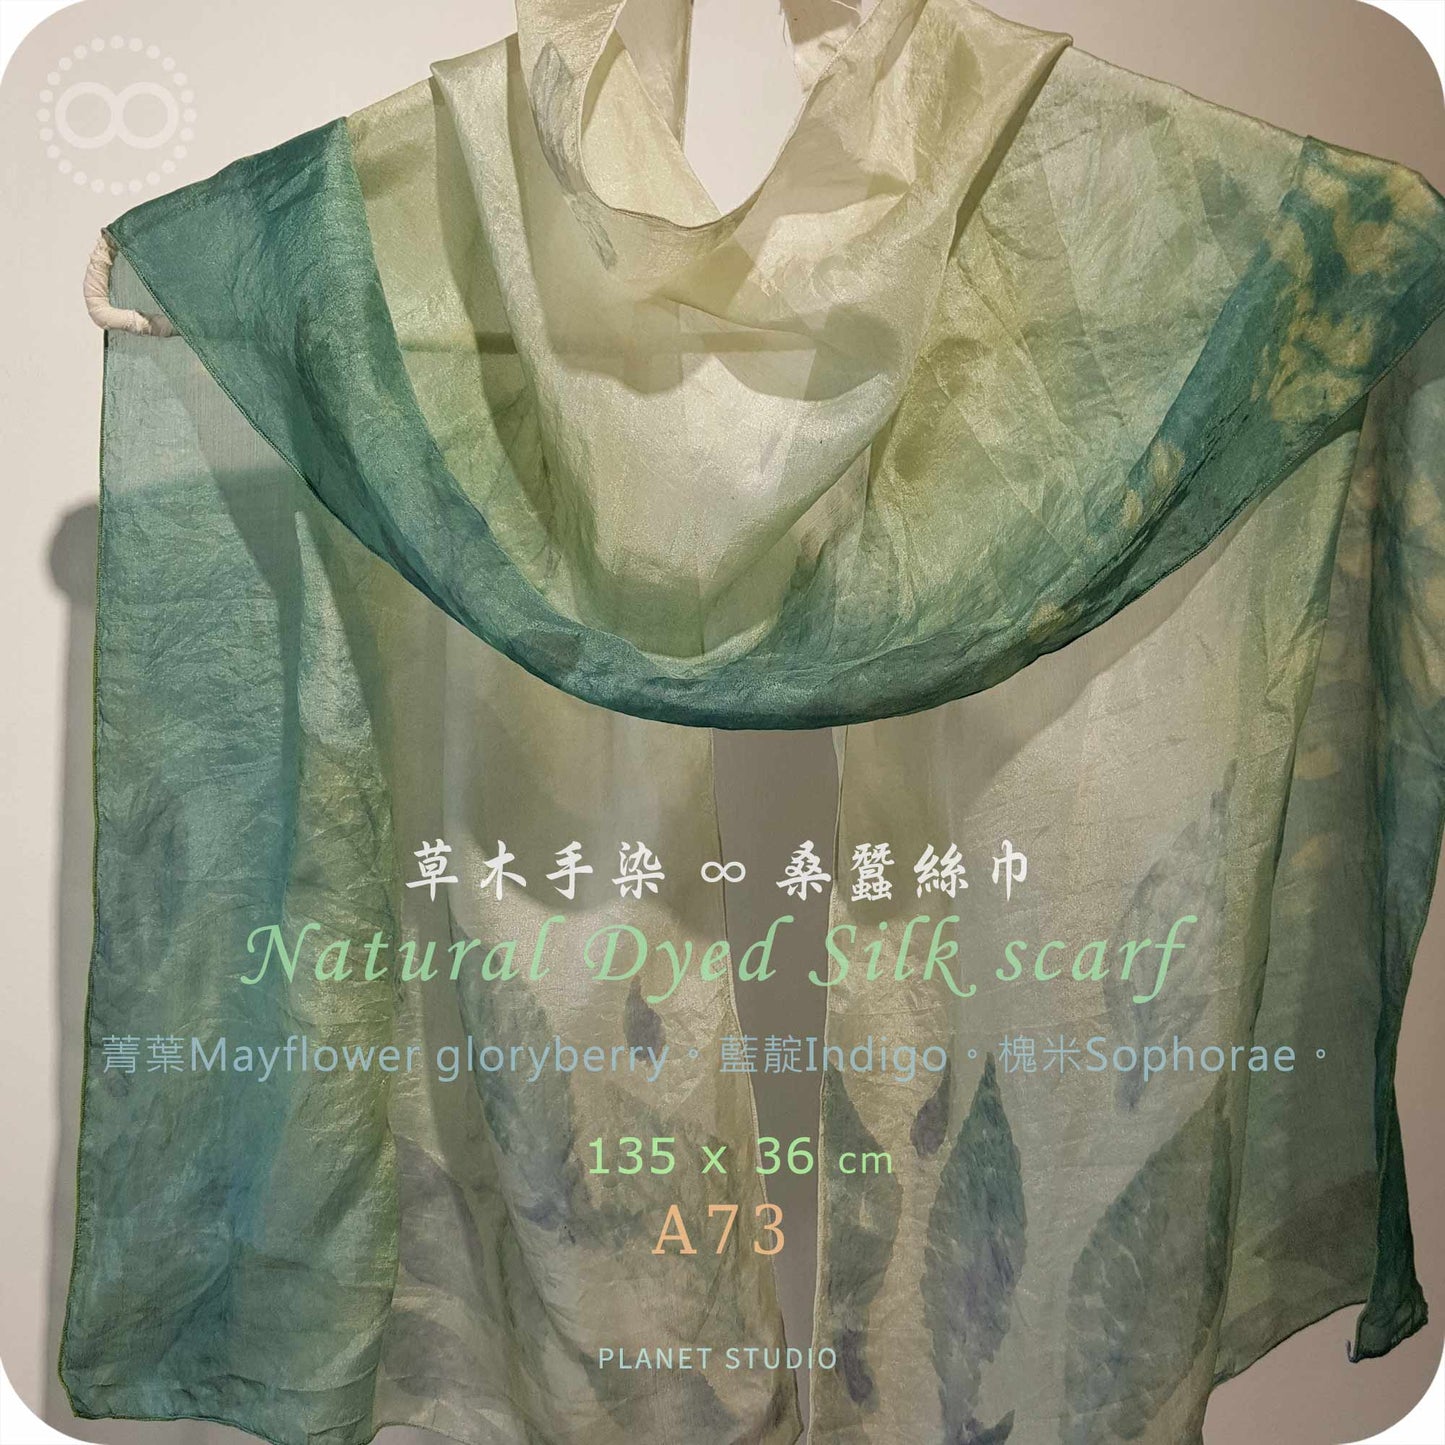 草木手染 ∞ 桑蠶絲長巾 Natural Dyed Silk Scarf  ● 36 x 135 cm  - A73